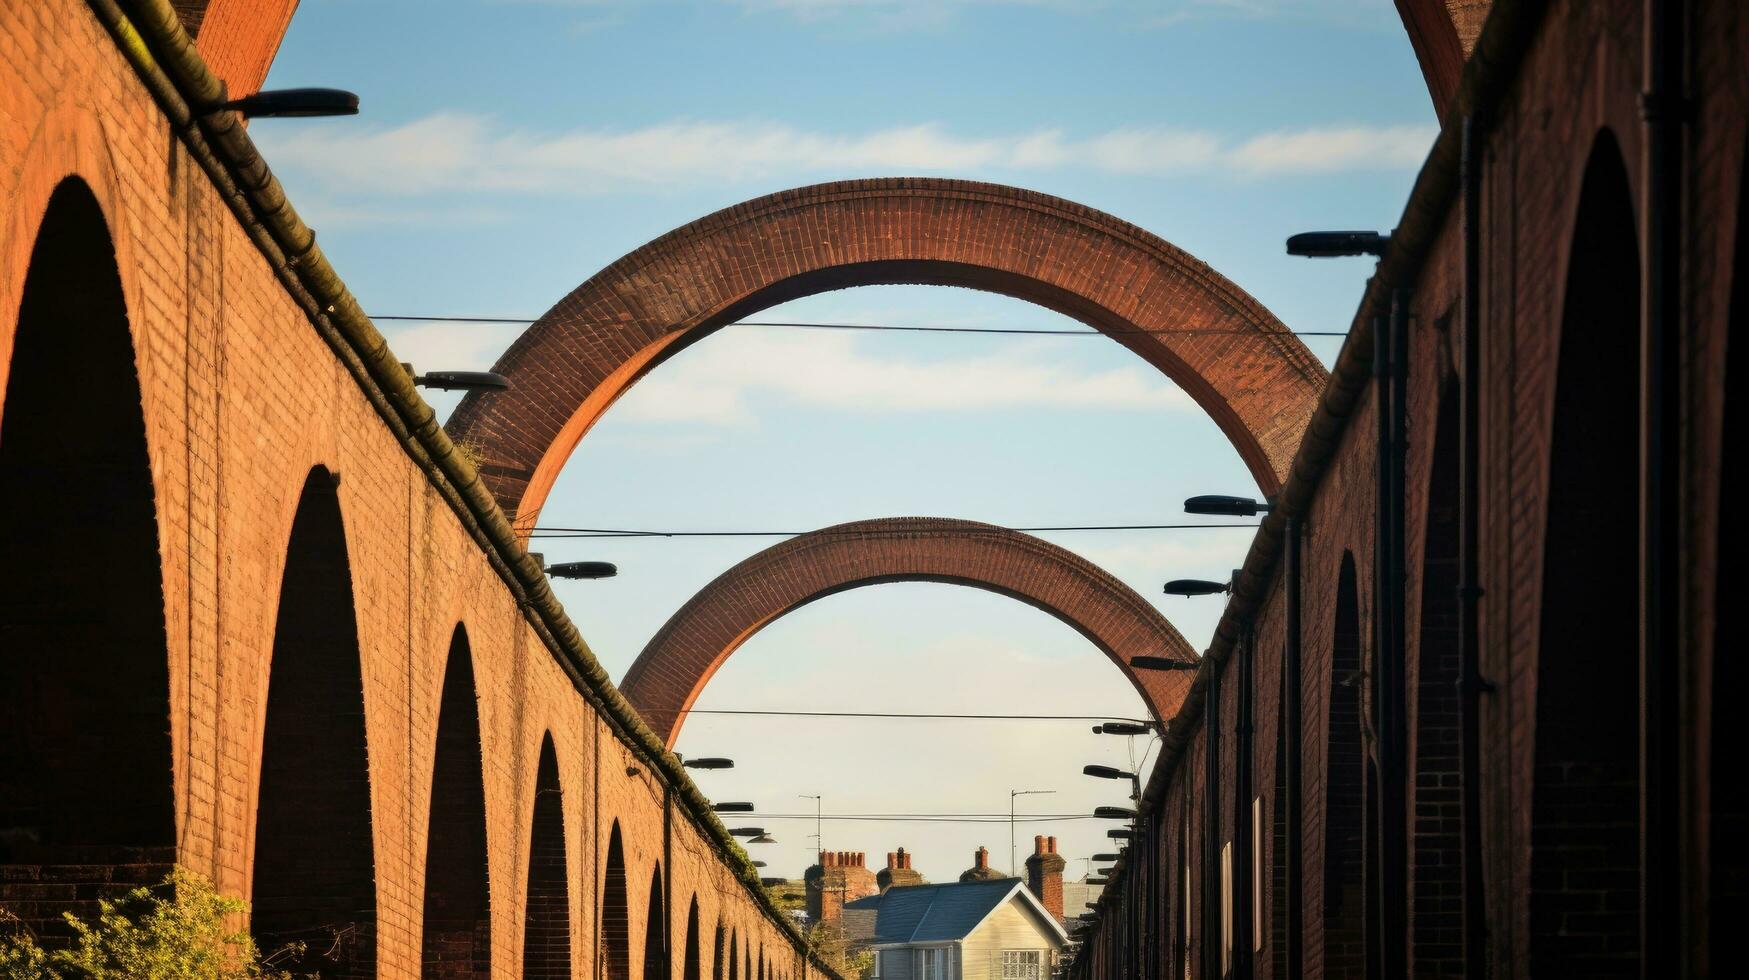 Chimenea tapas debajo ferrocarril puente arcos en casas abajo el rojo ladrillo tren arcos silueta en un soleado día en mansfield pueblo Nottinghamshire foto